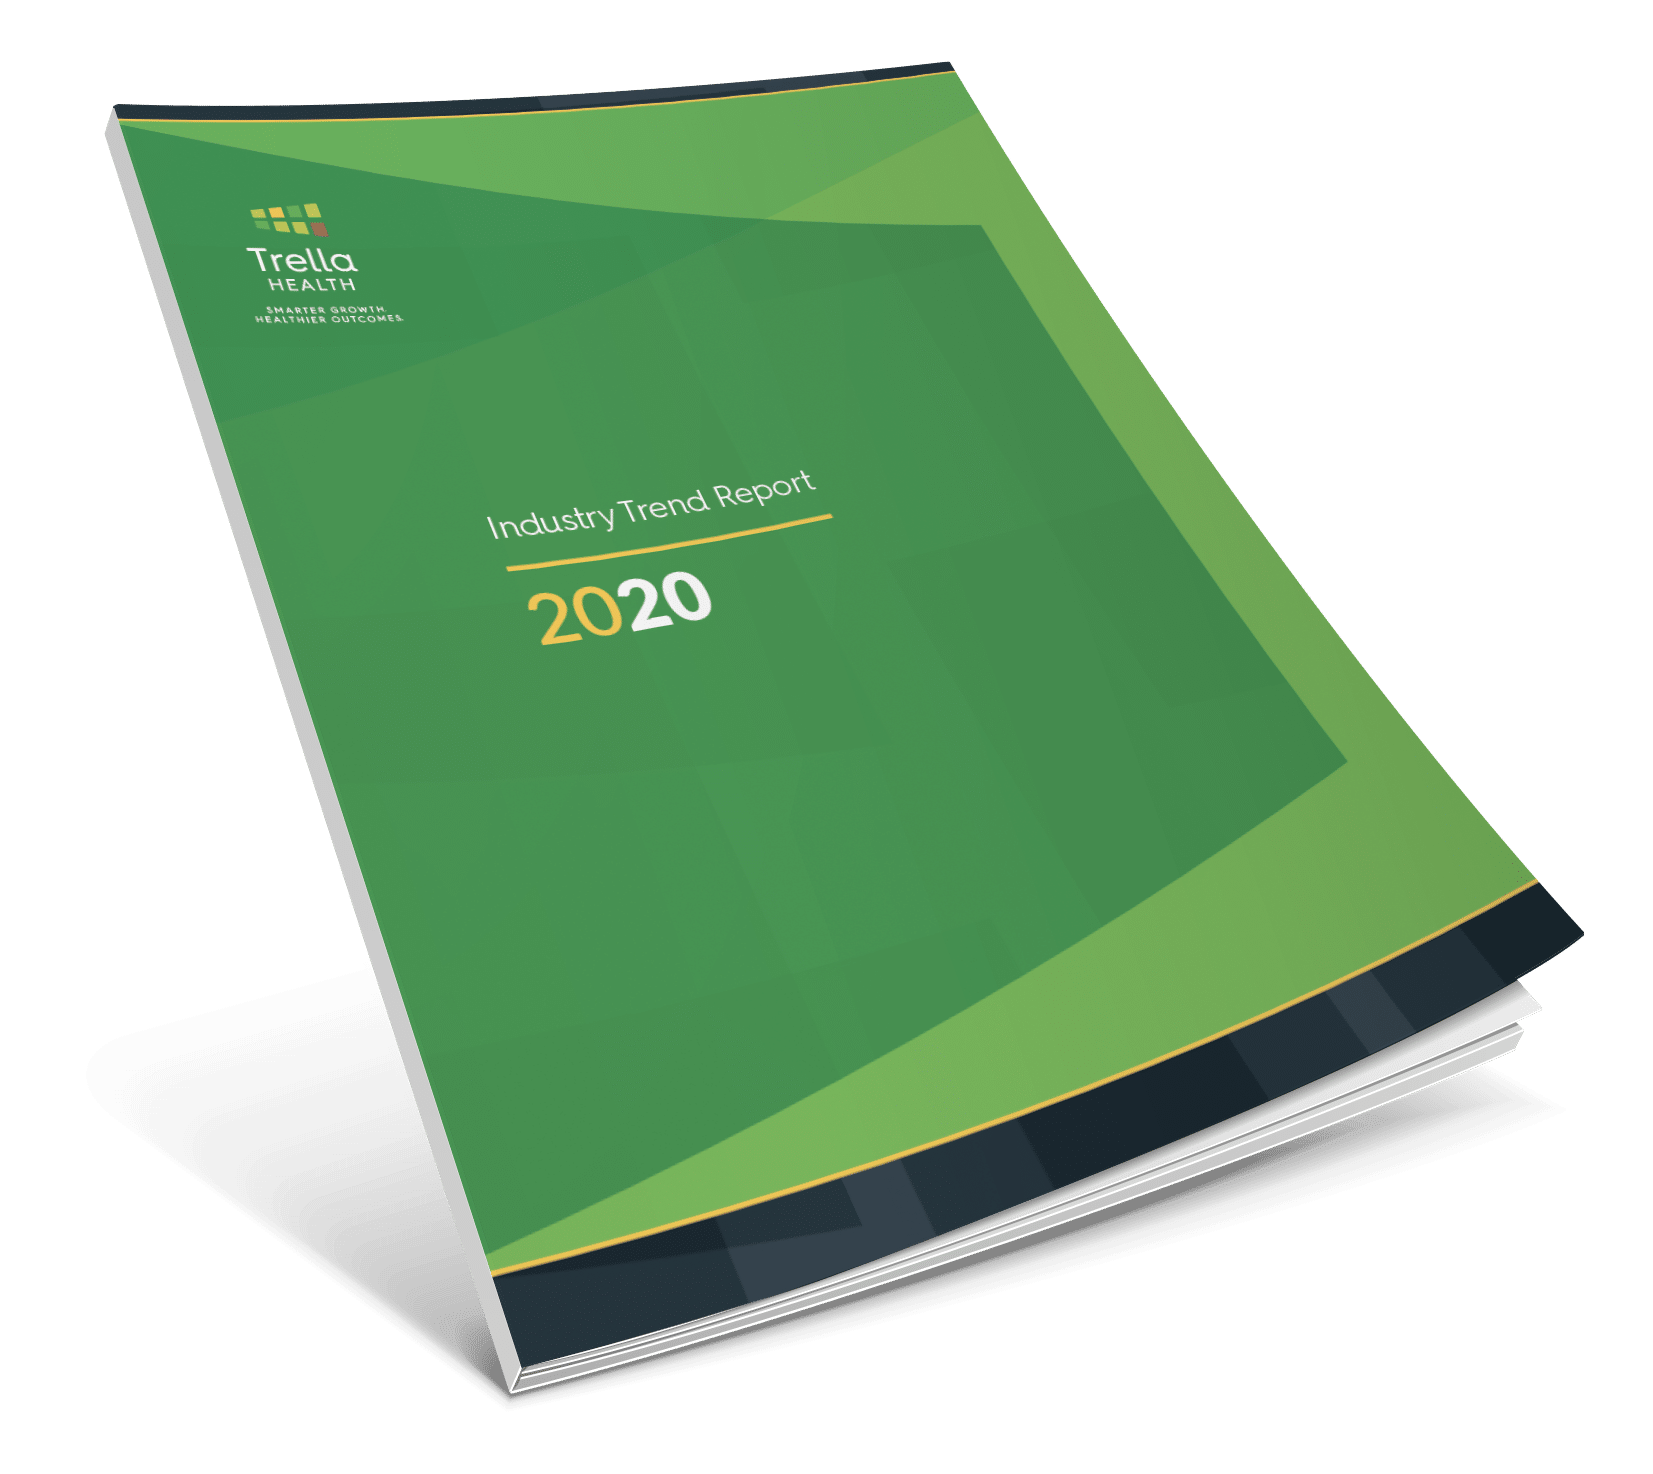 2020 Industry Trend Report